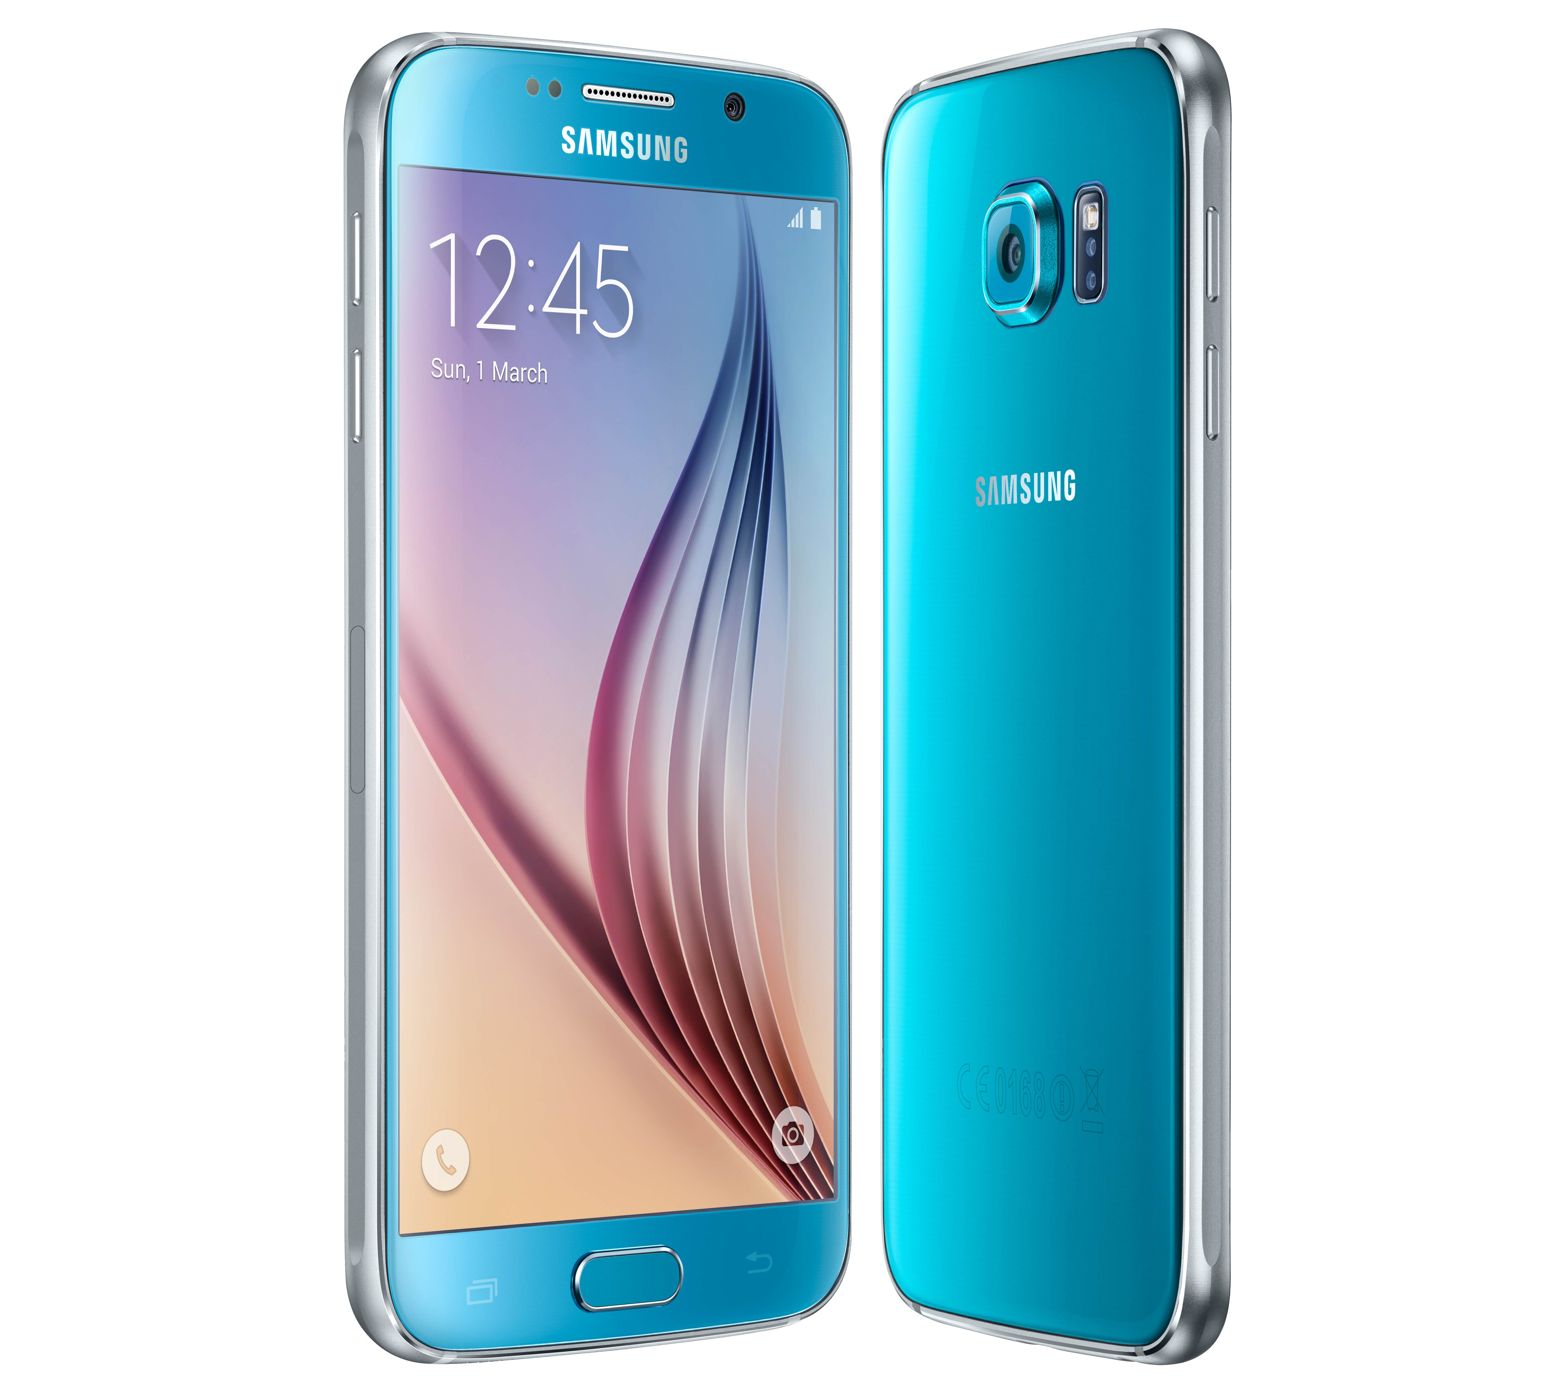 Mobilní telefon Samsung Galaxy S6 modrá, modrý